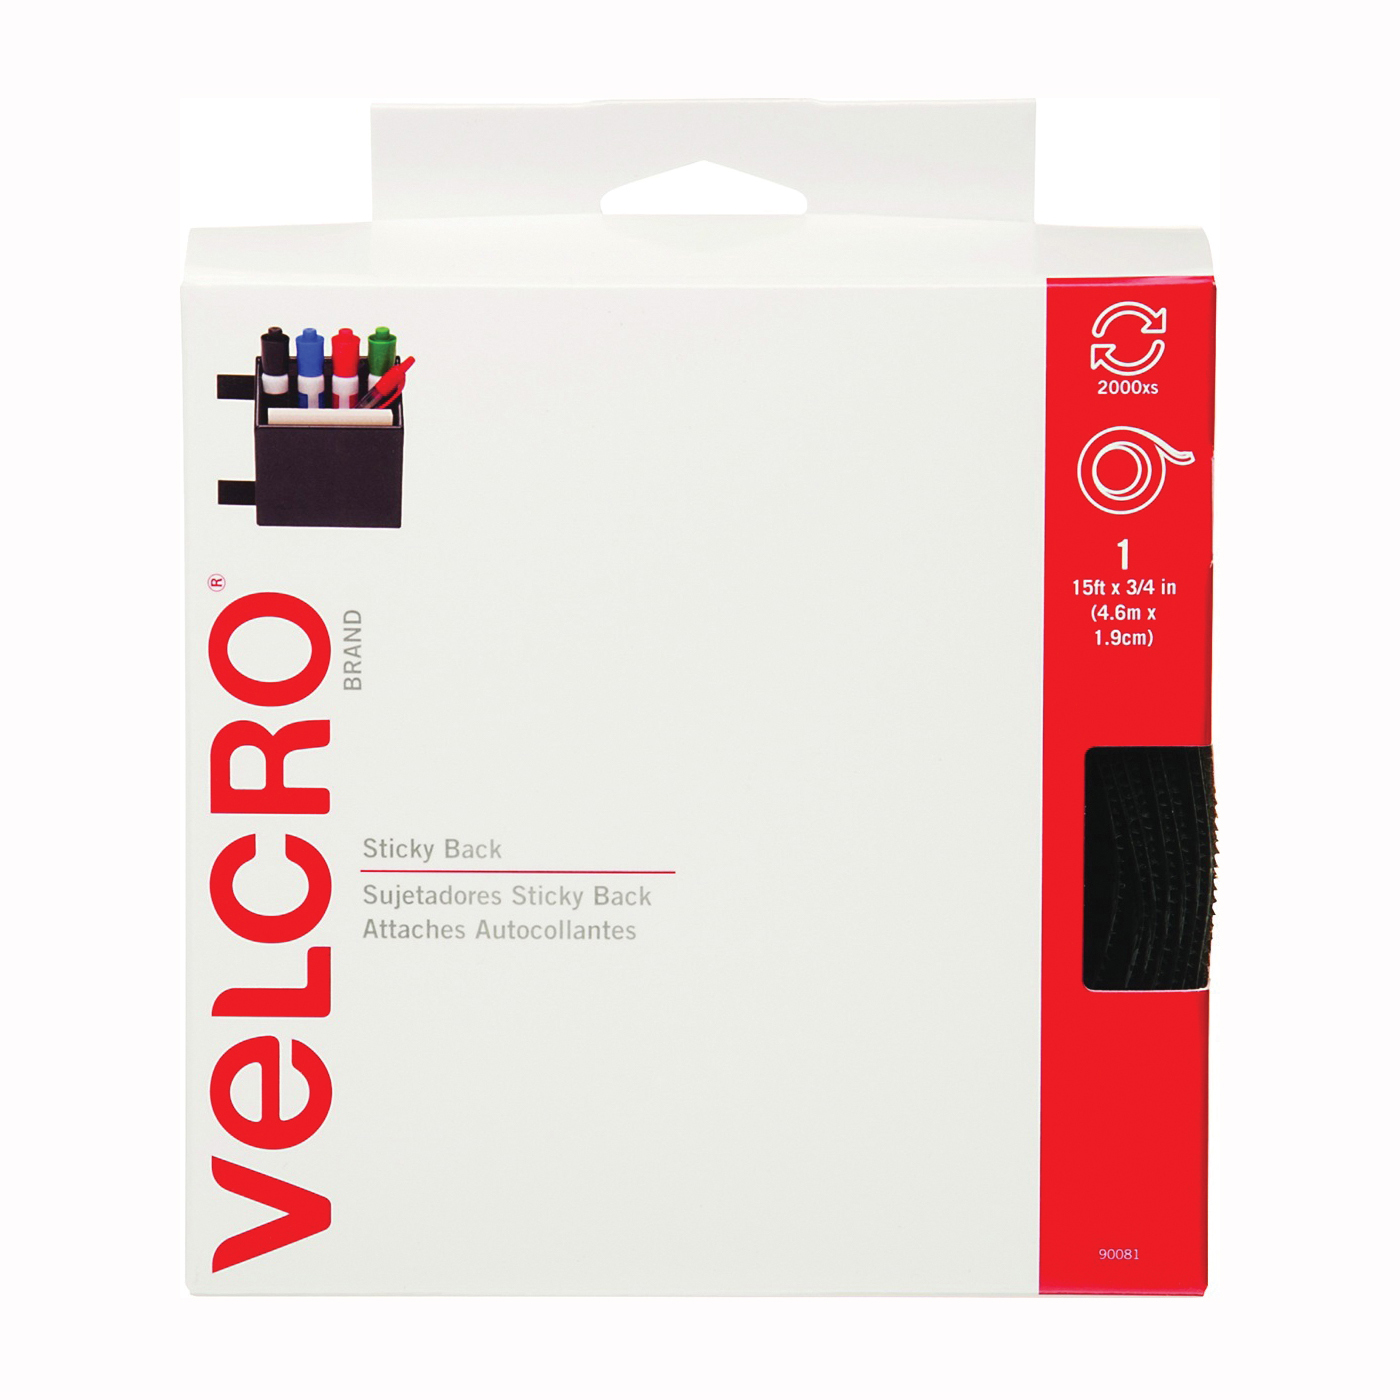 VELCRO Brand 90081 Fastener, 3/4 in W, 15 ft L, Nylon, Black, Rubber Adhesive - 1